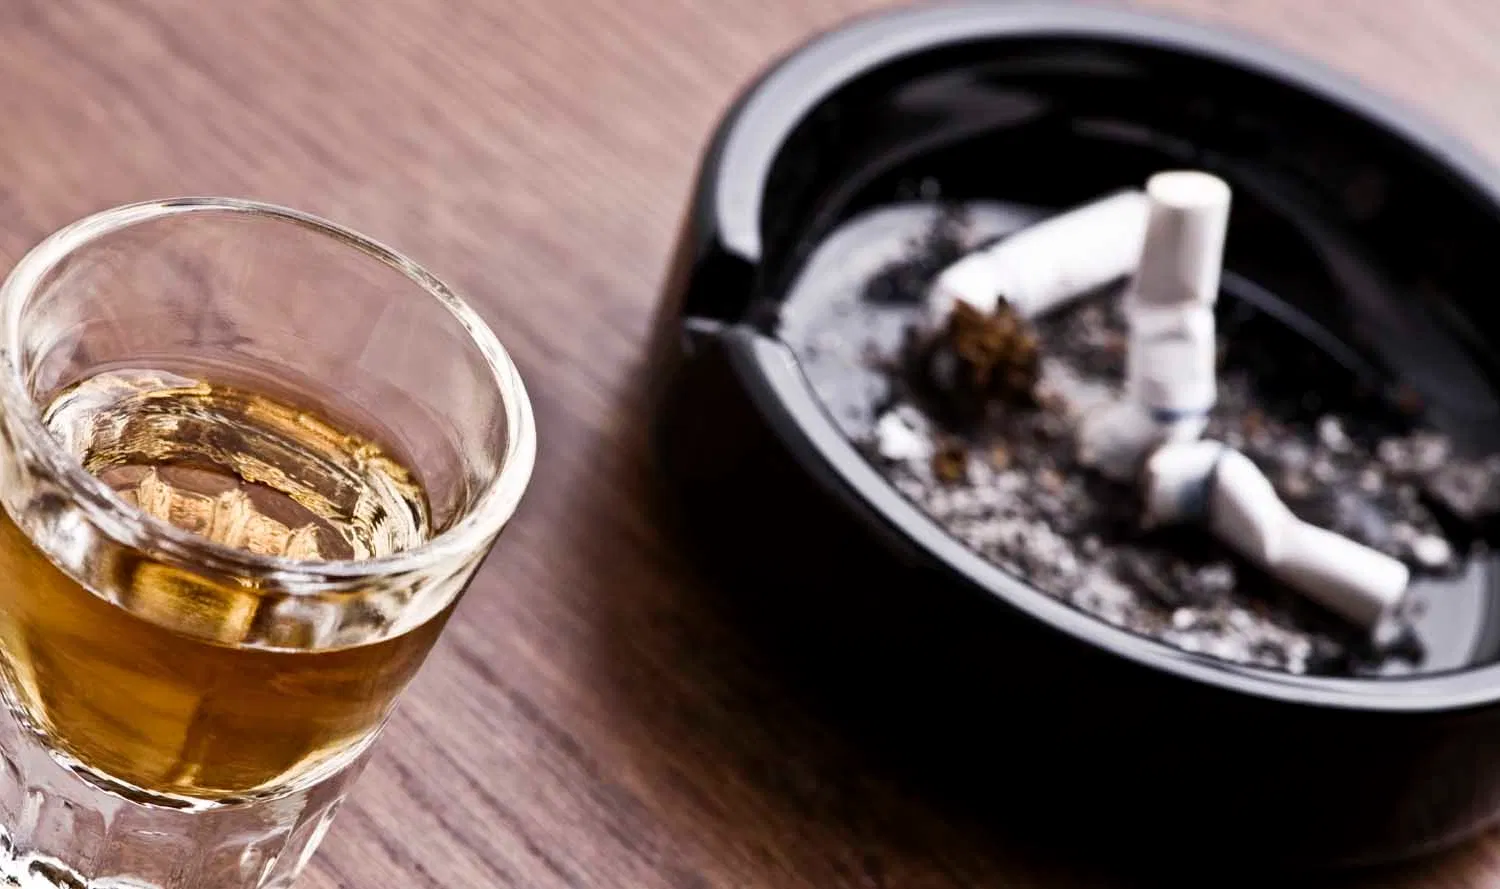 Sigara ve alkole yeni yasaklar geliyor